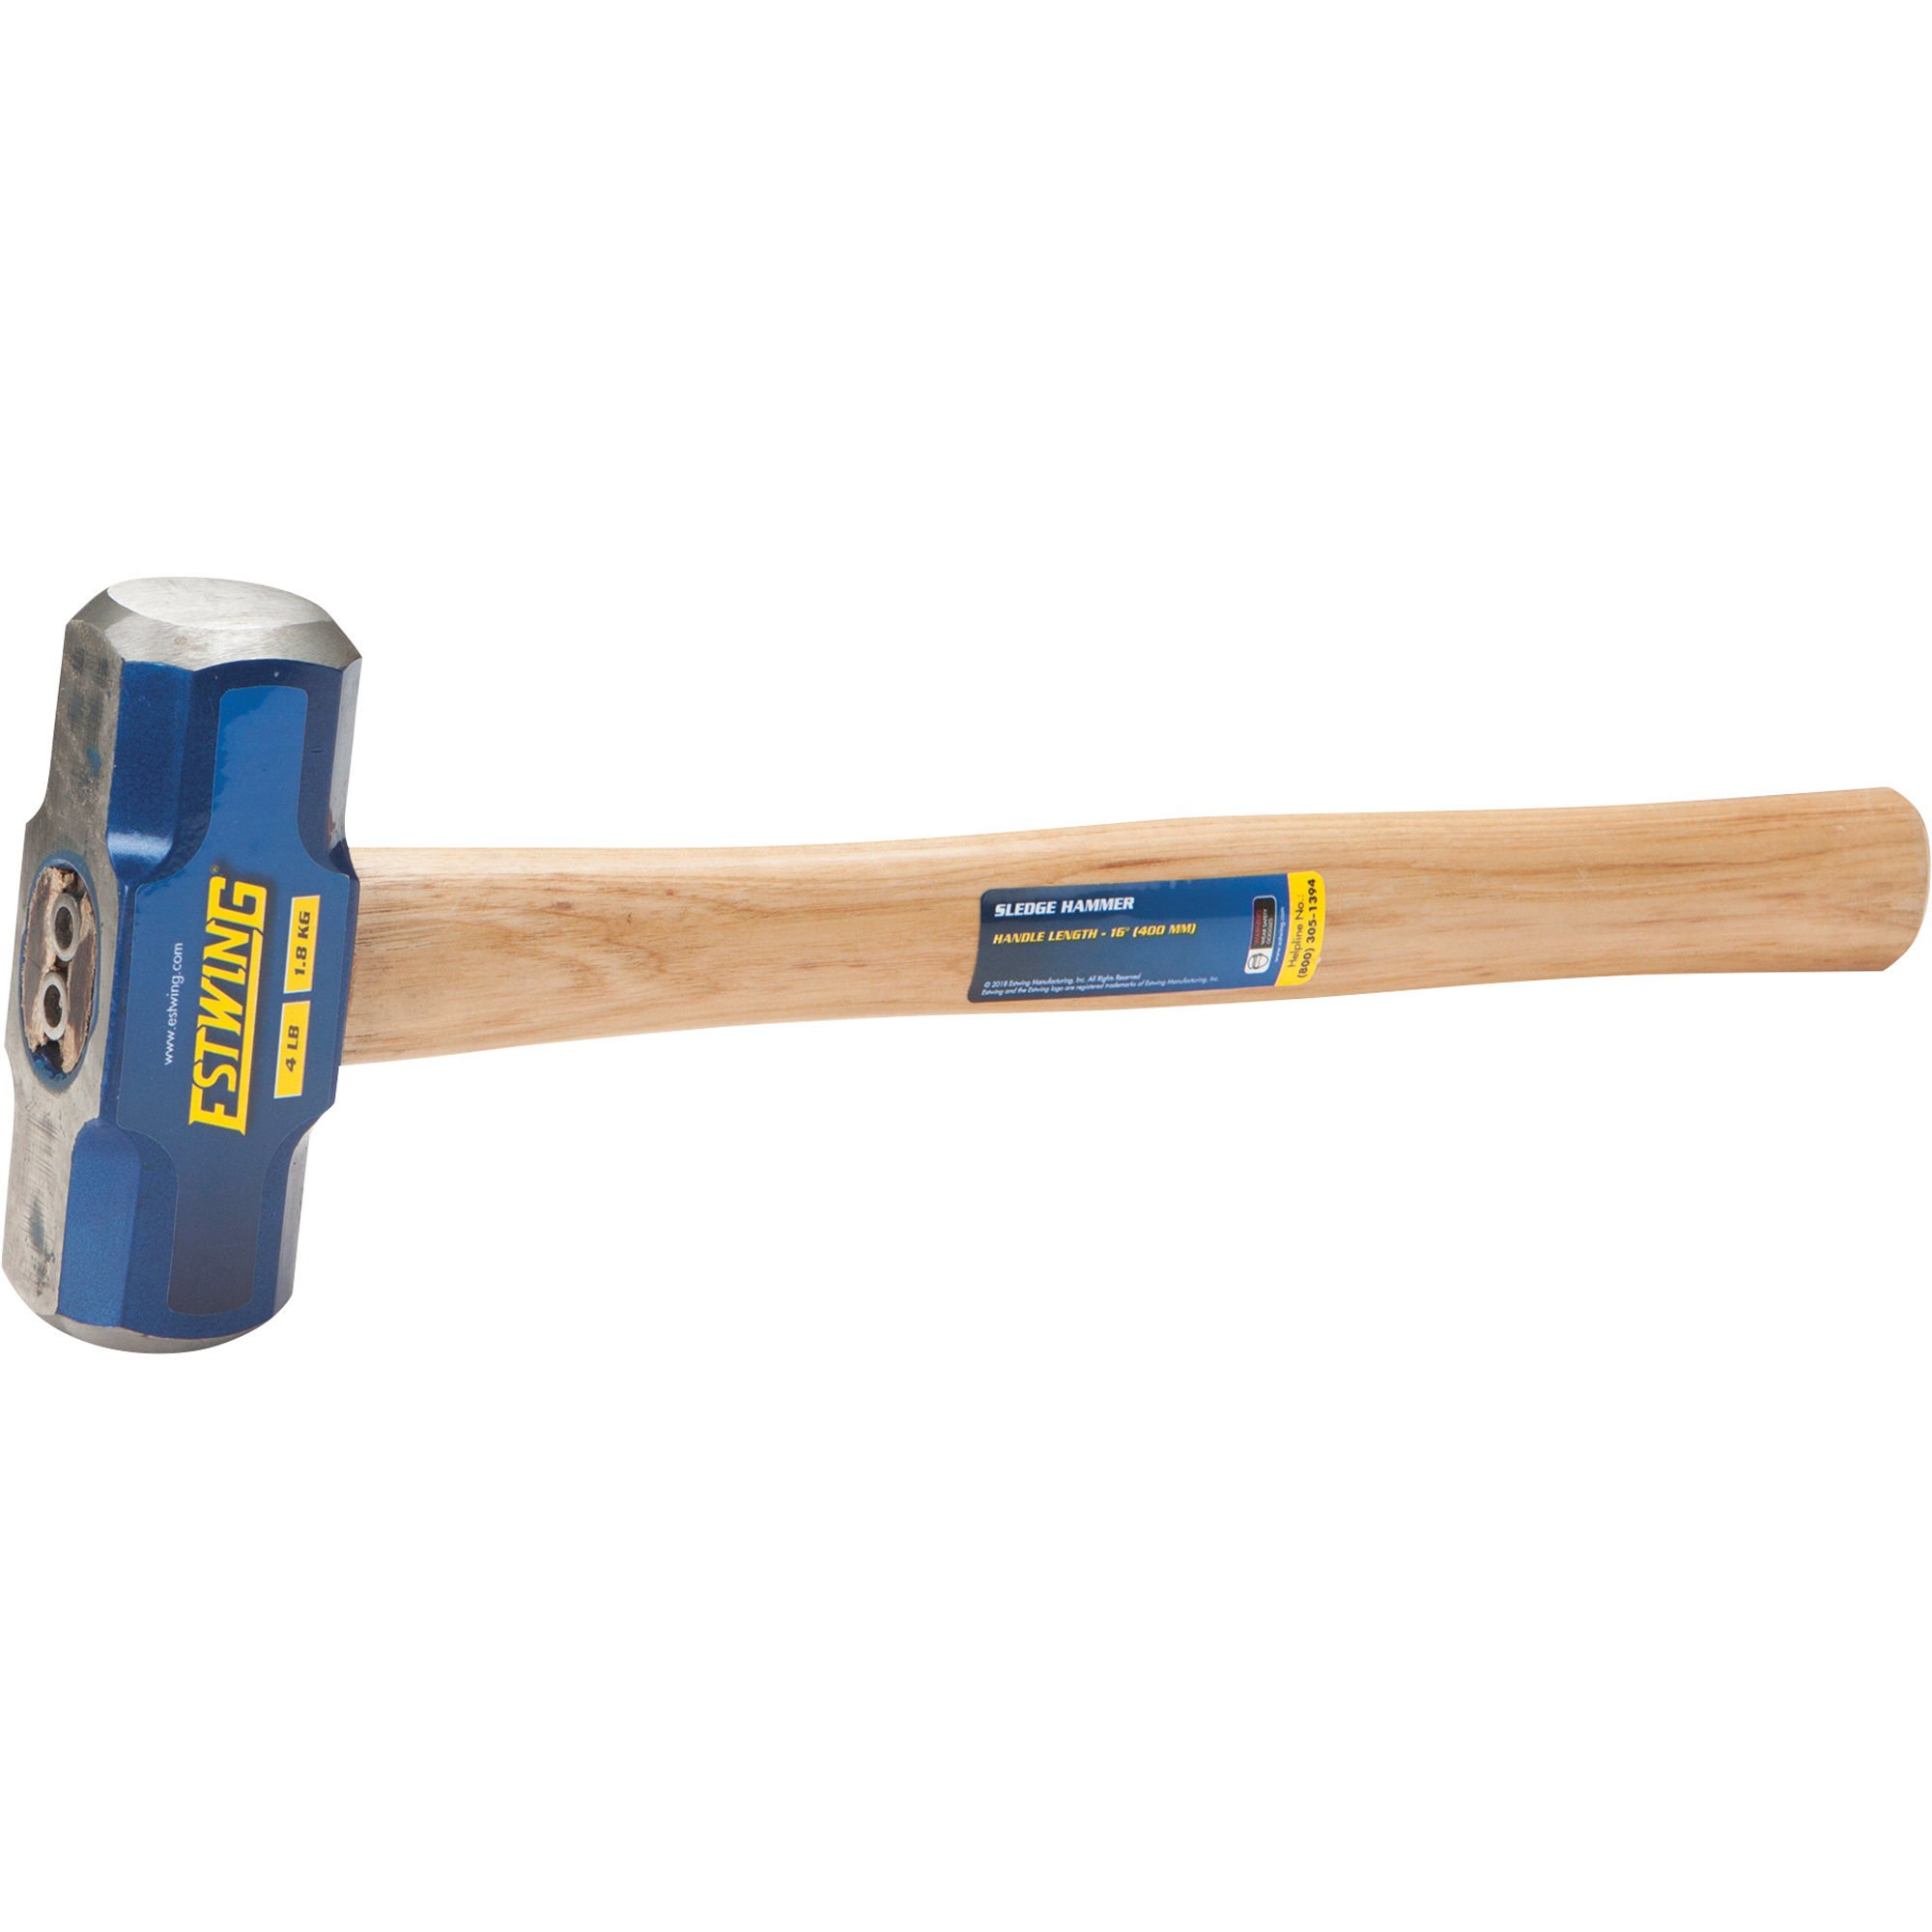 Estwing Sledge Hammer with Wood Handle, 4-Lb., 16Inch L, Model ESH-416W